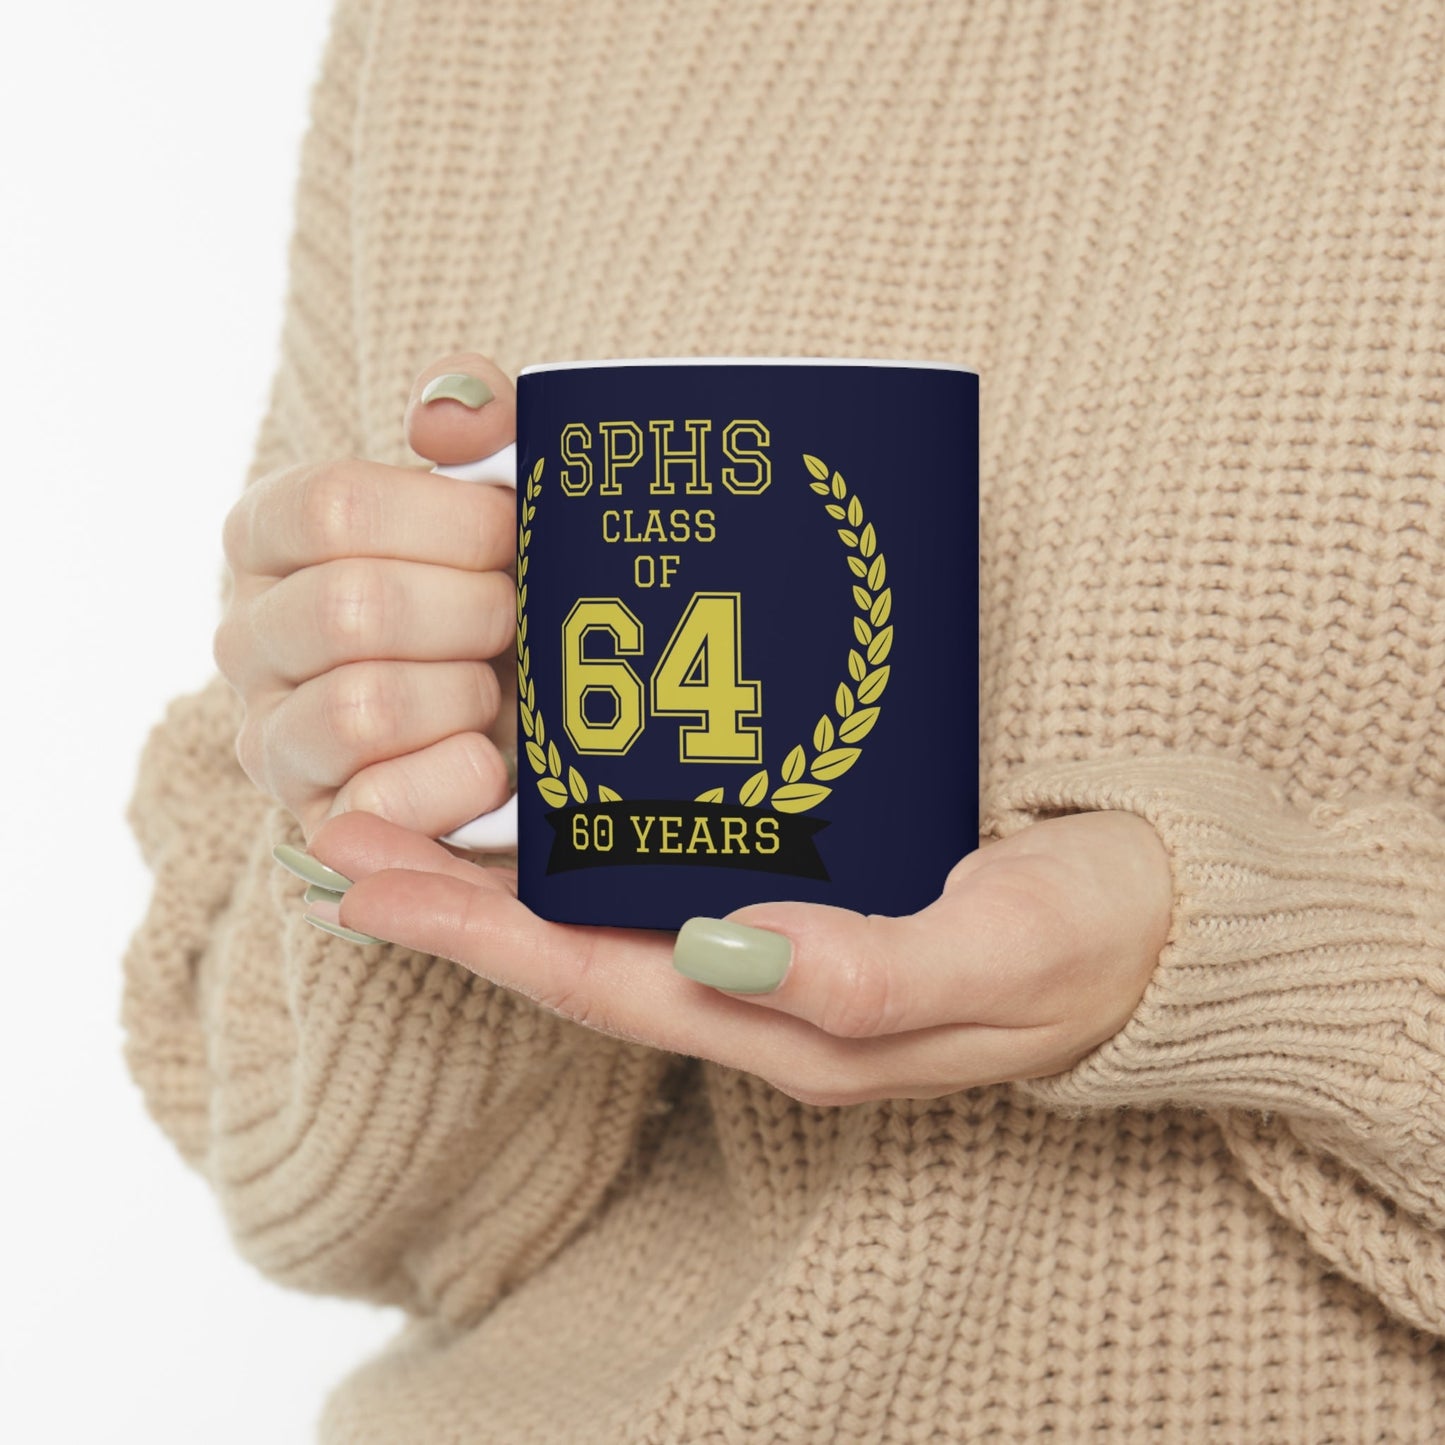 SPHS 64 Mug